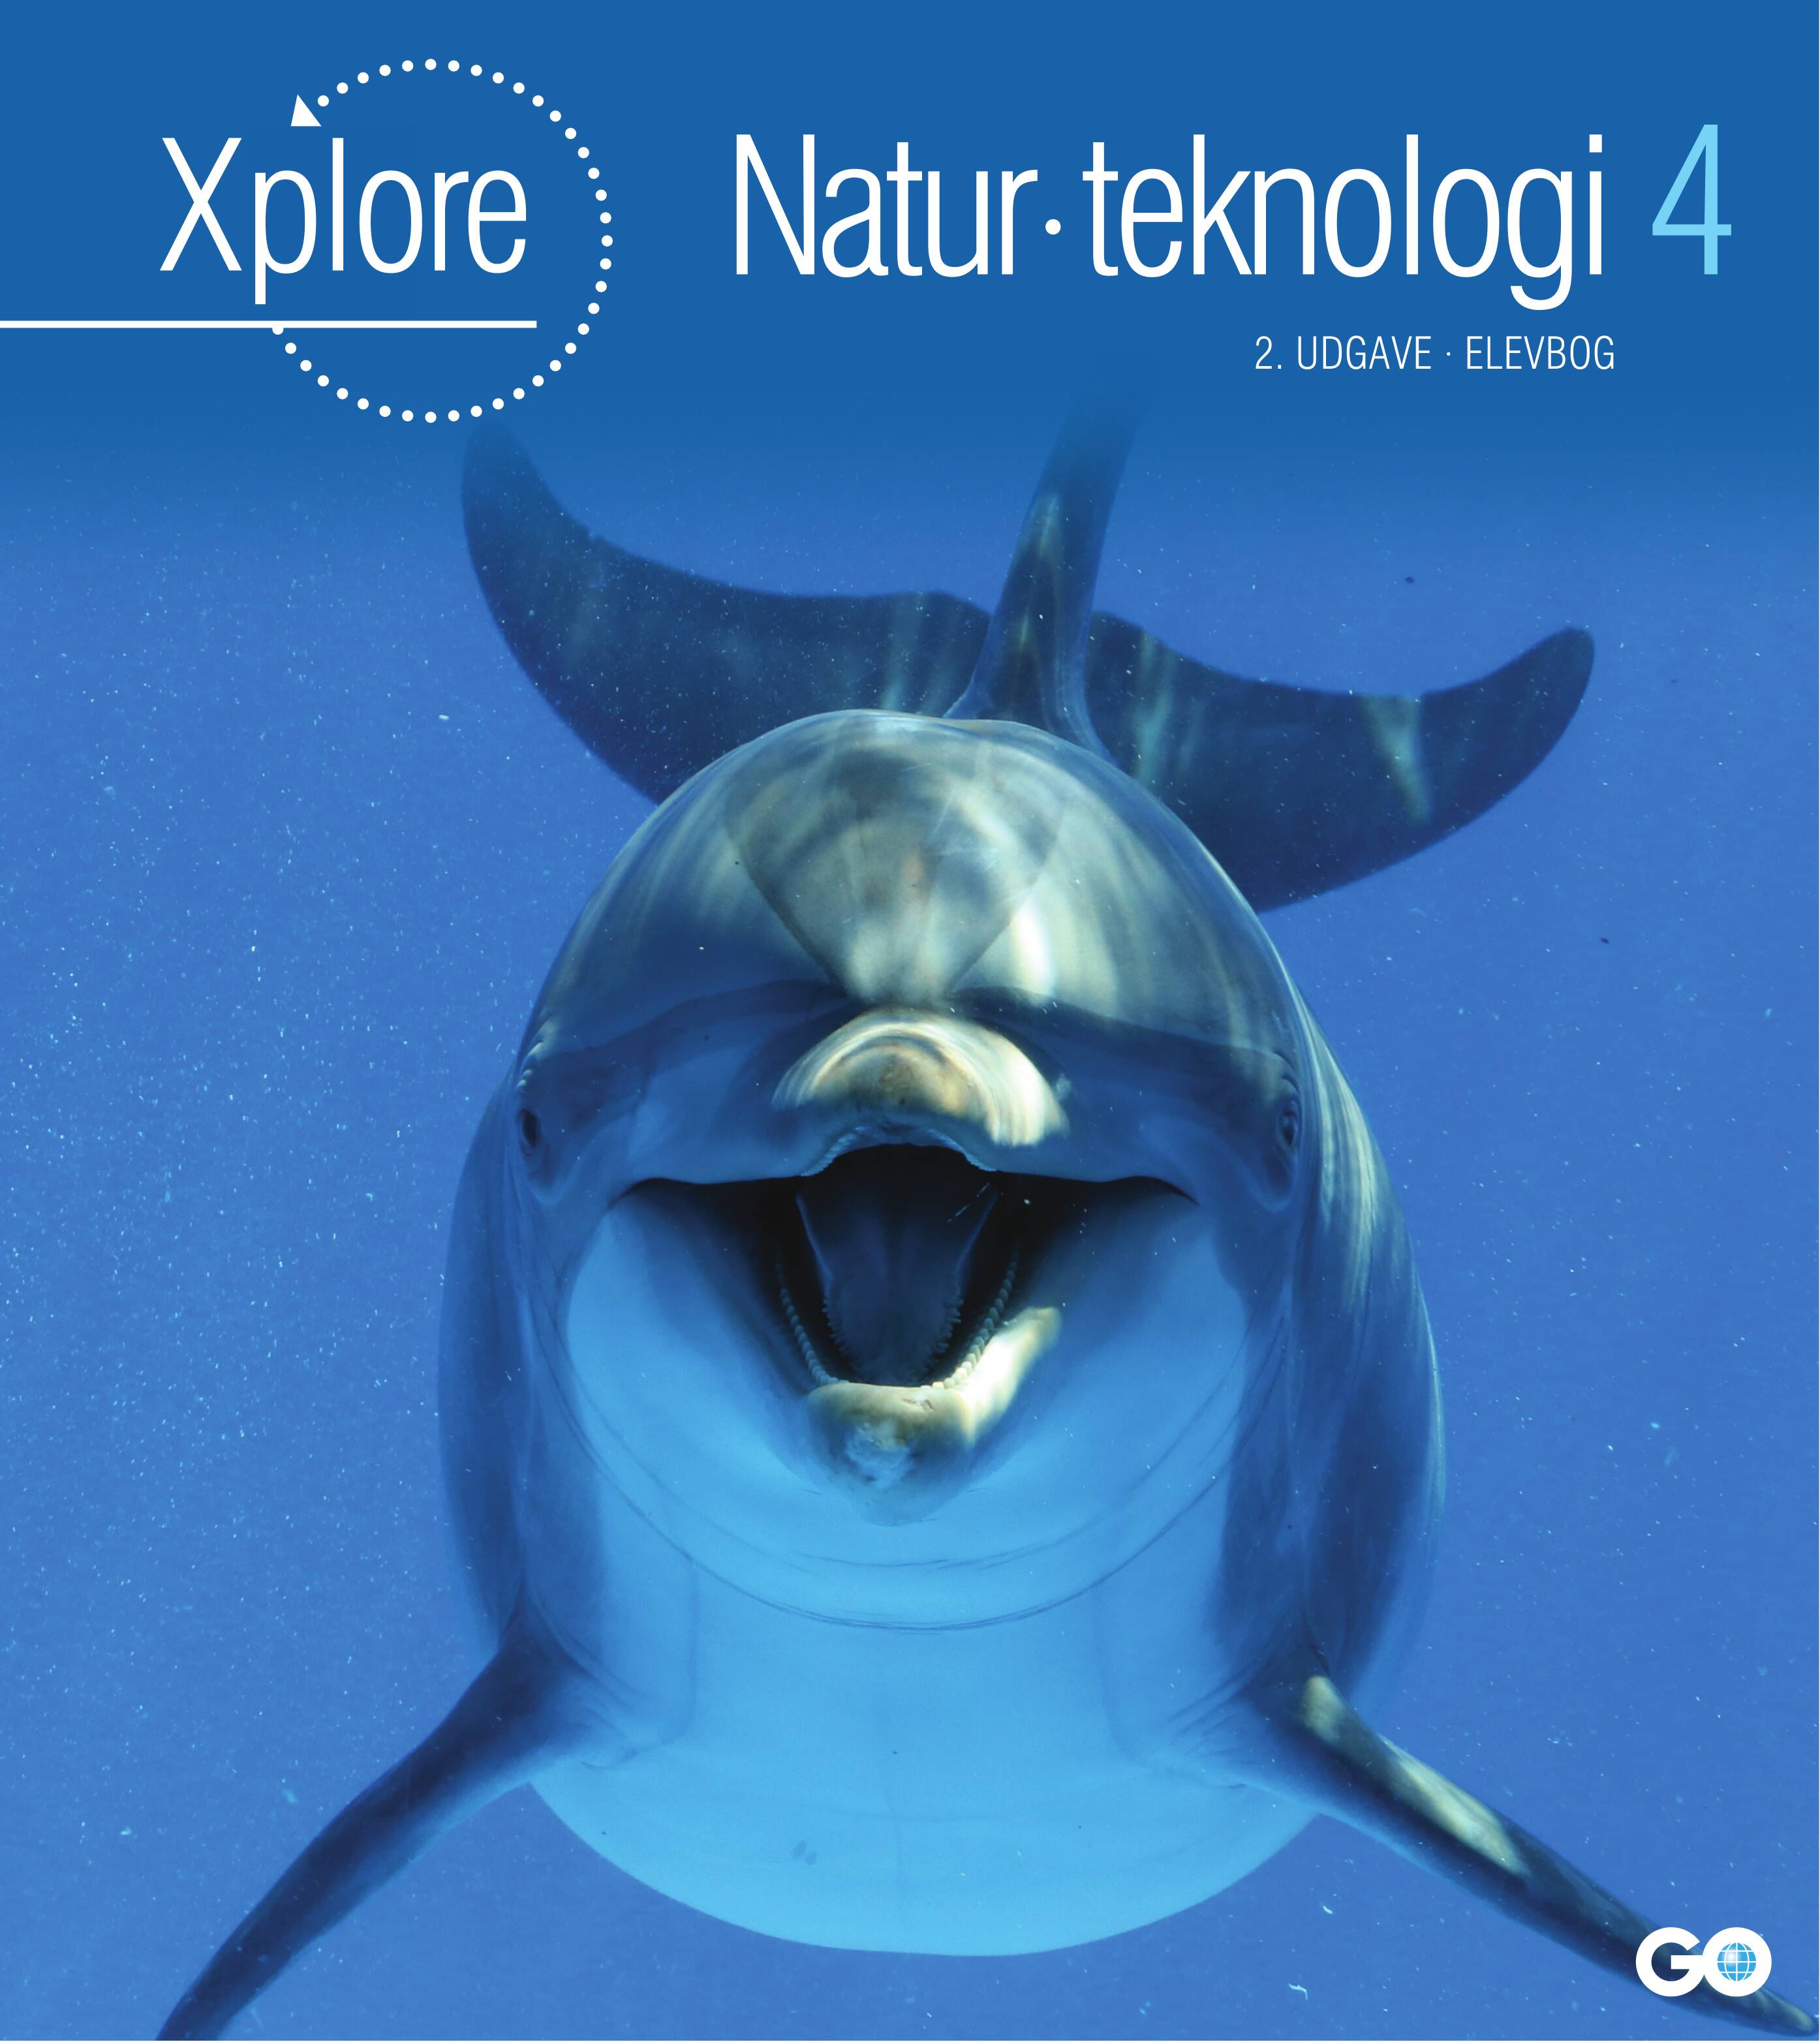 Xplore Natur/teknologi 4 Elevbog - 2. udgave